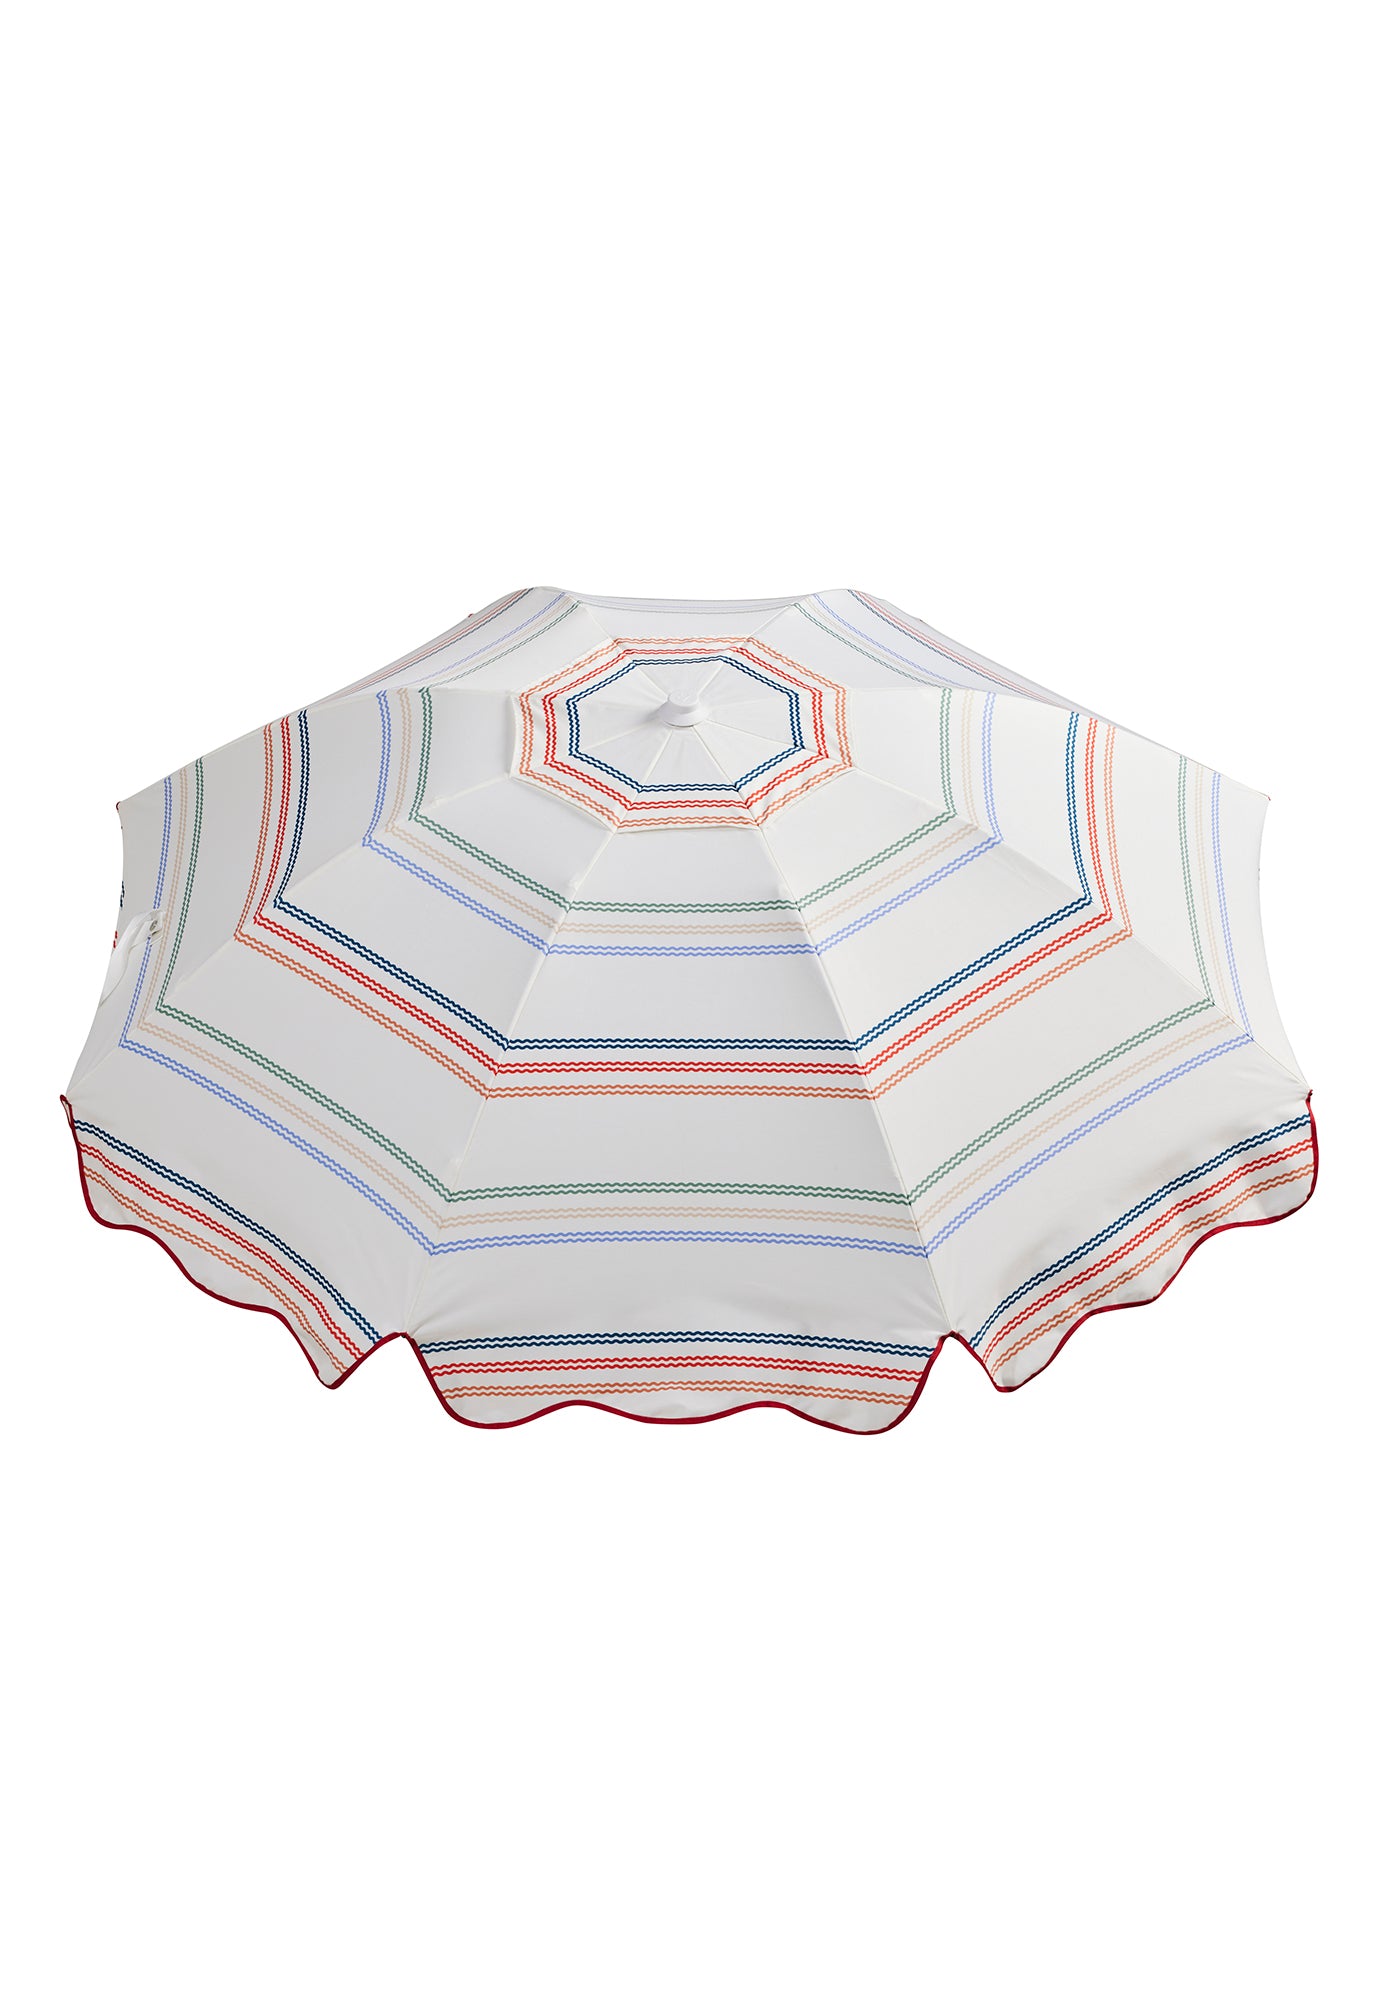 basil bangs - premium beach umbrella